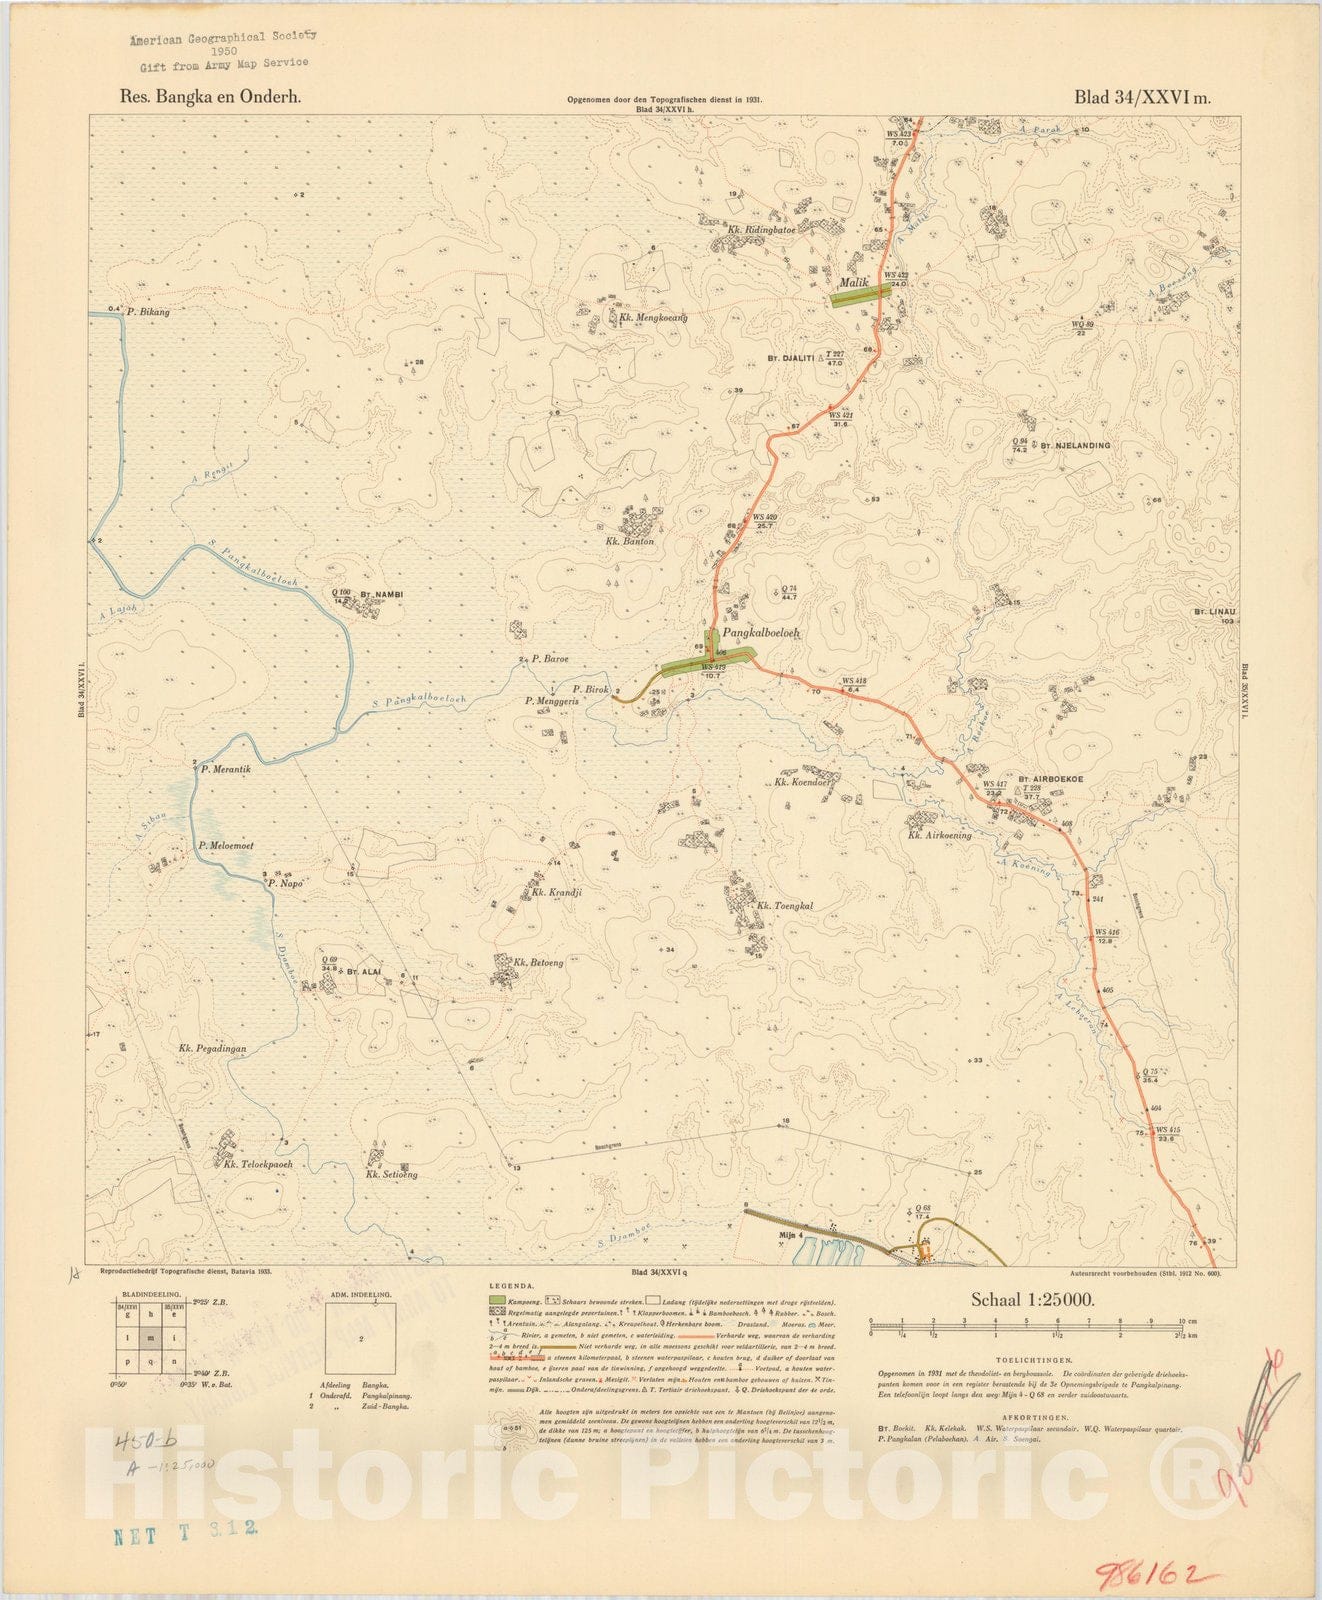 Map : Bangka Island, Indonesia 1935 14, Res. Bangka en Onderh : topografische en fotogrammetrische kaarterring, Antique Vintage Reproduction